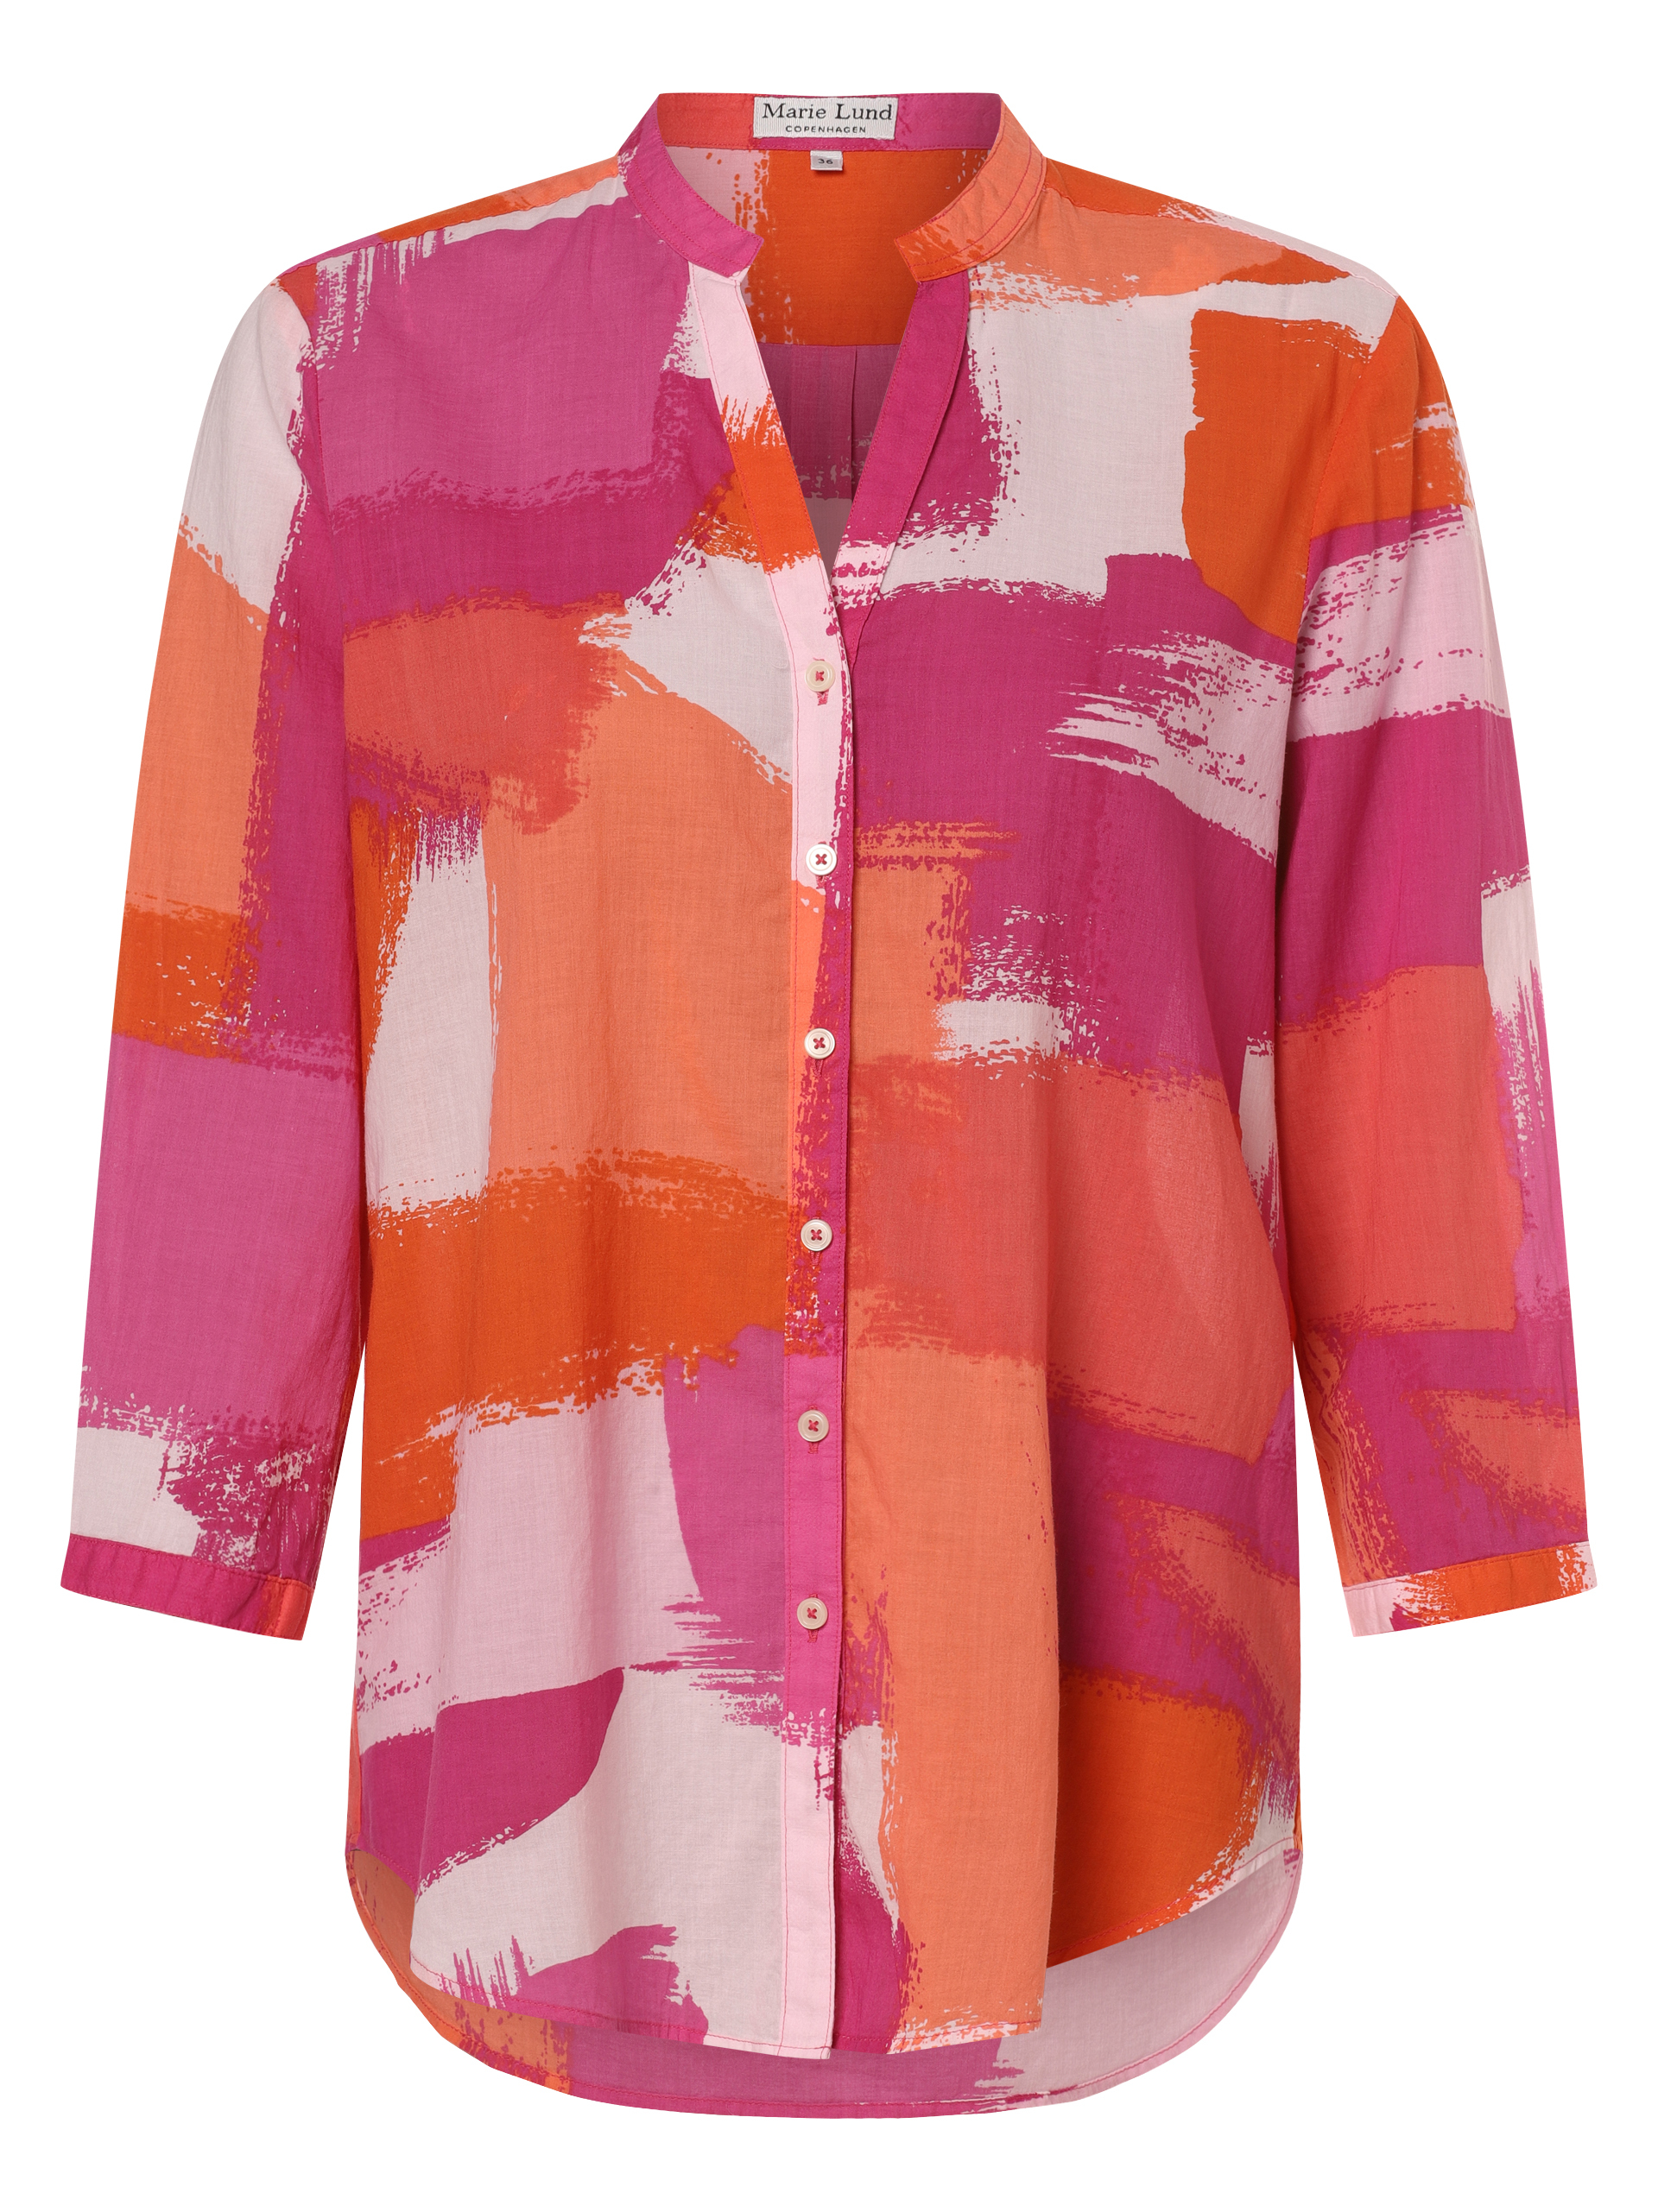 Блуза Marie Lund, розовый цена и фото